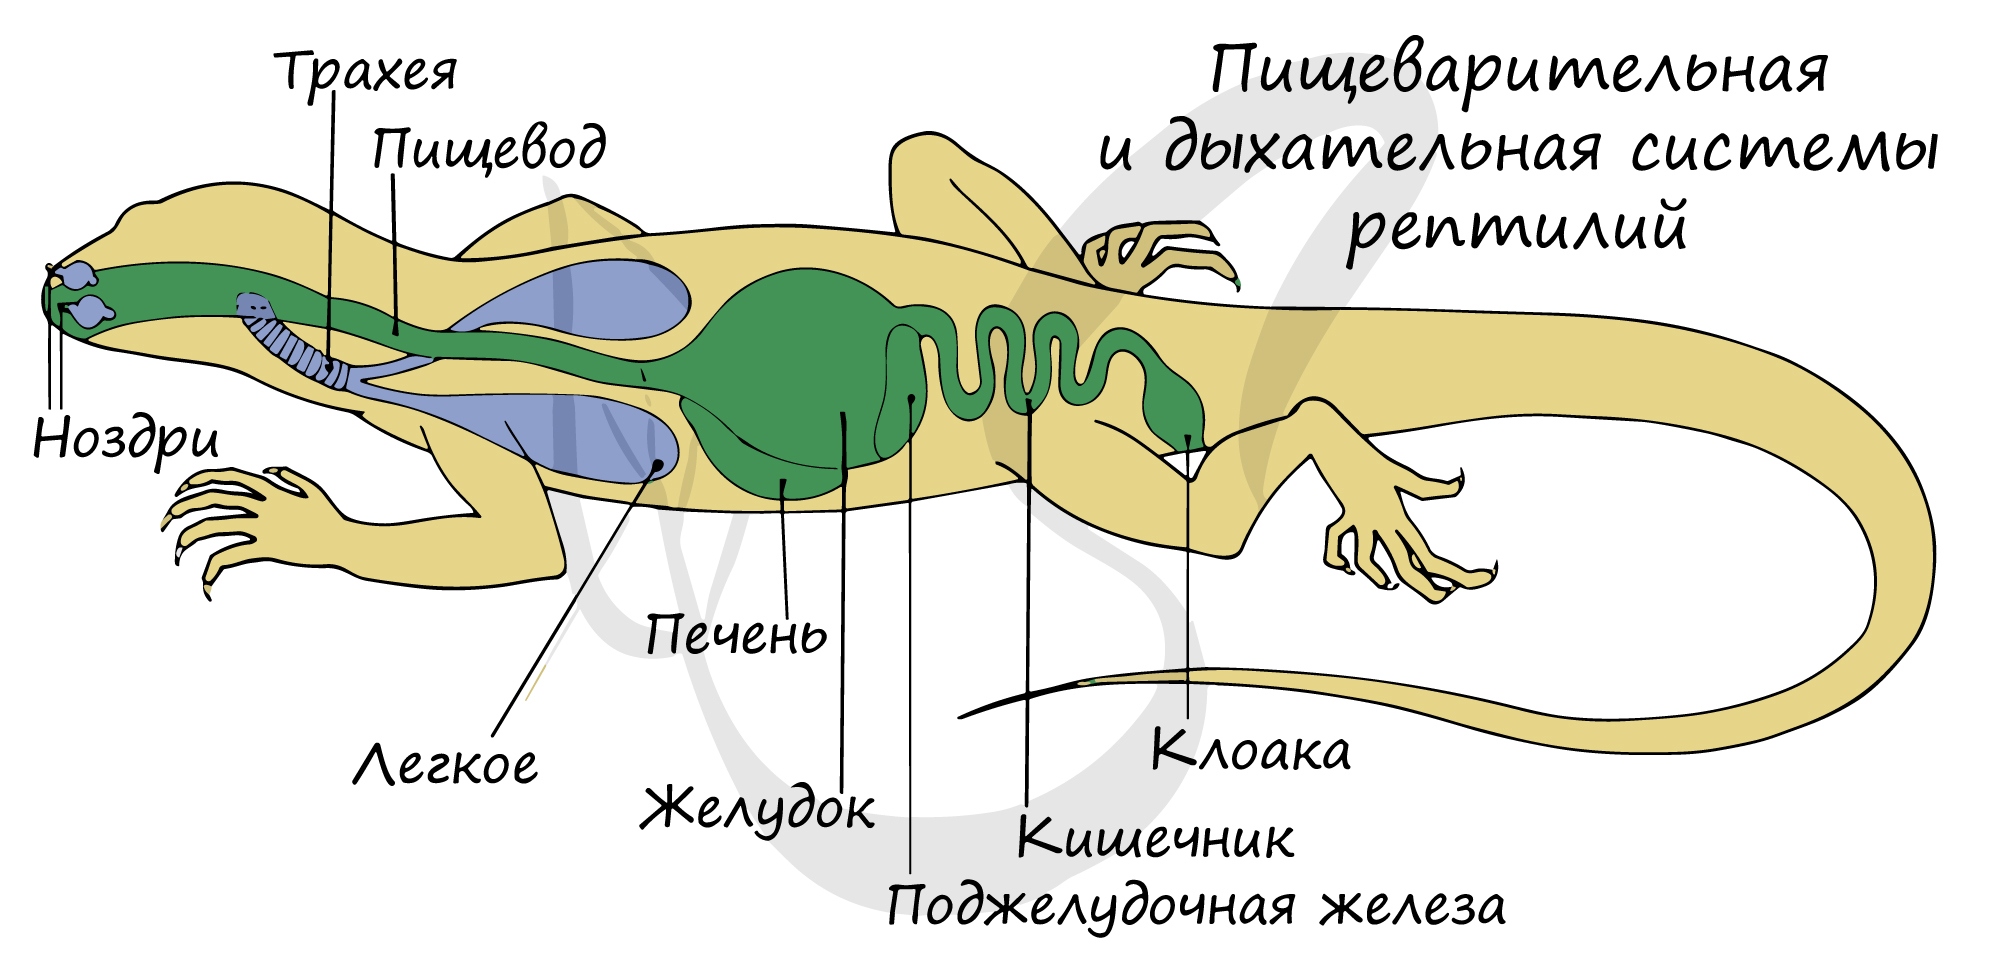 Орган дыхательной системы ящерицы. Схема пищеварительной и дыхательной систем ящерицы. Дыхательная система рептилий. Клоака у земноводных. Пищеварительная система рептилий.